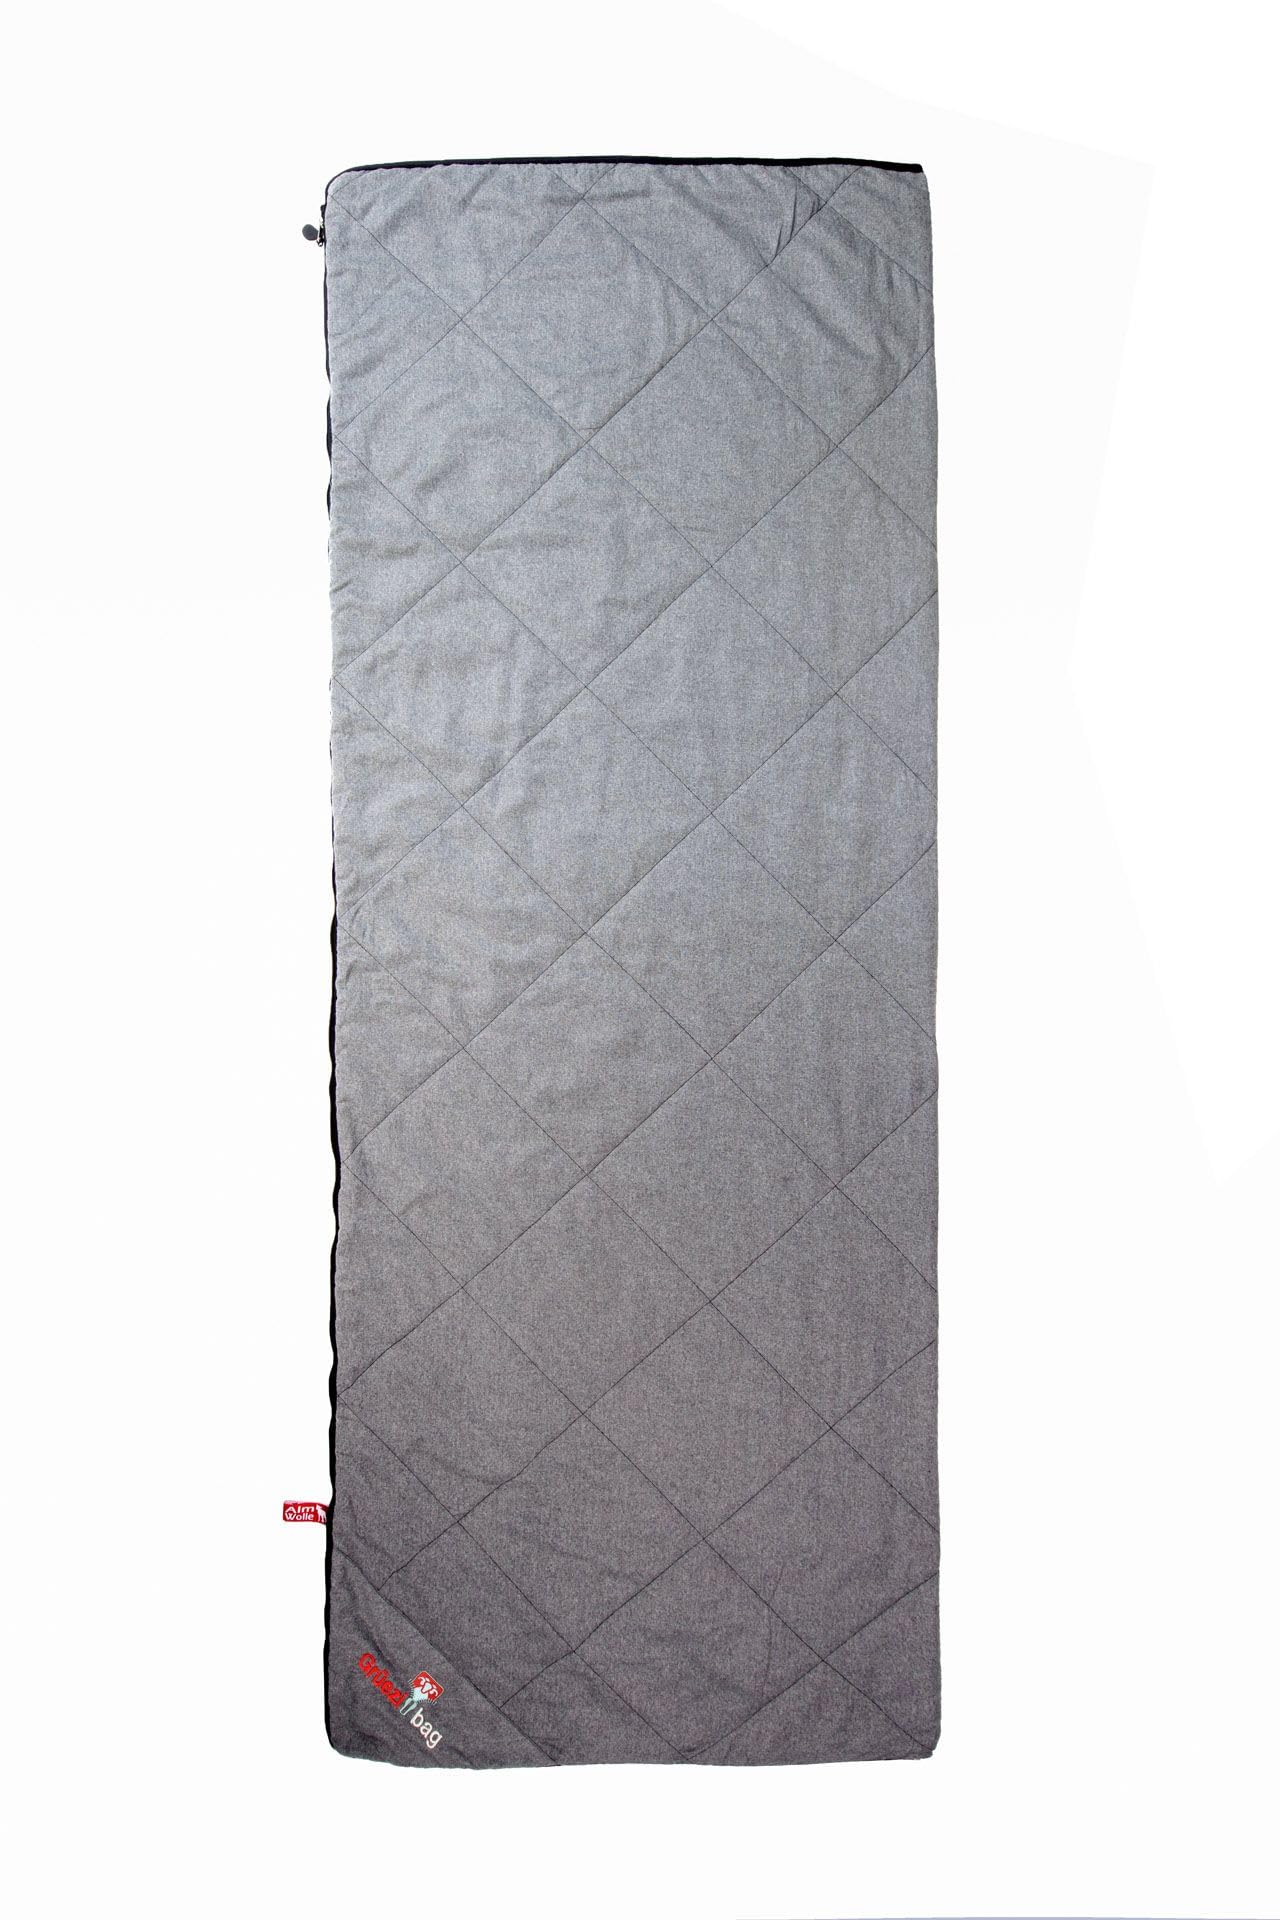 Grüezi-Bag WellhealthBlanket Wool Schlafsack & Wolldecke 2-in-1, kuschelig weich und warm, Körpergröße bis 200 cm, 200x150cm, Packmaß Ø 14 x 19 cm